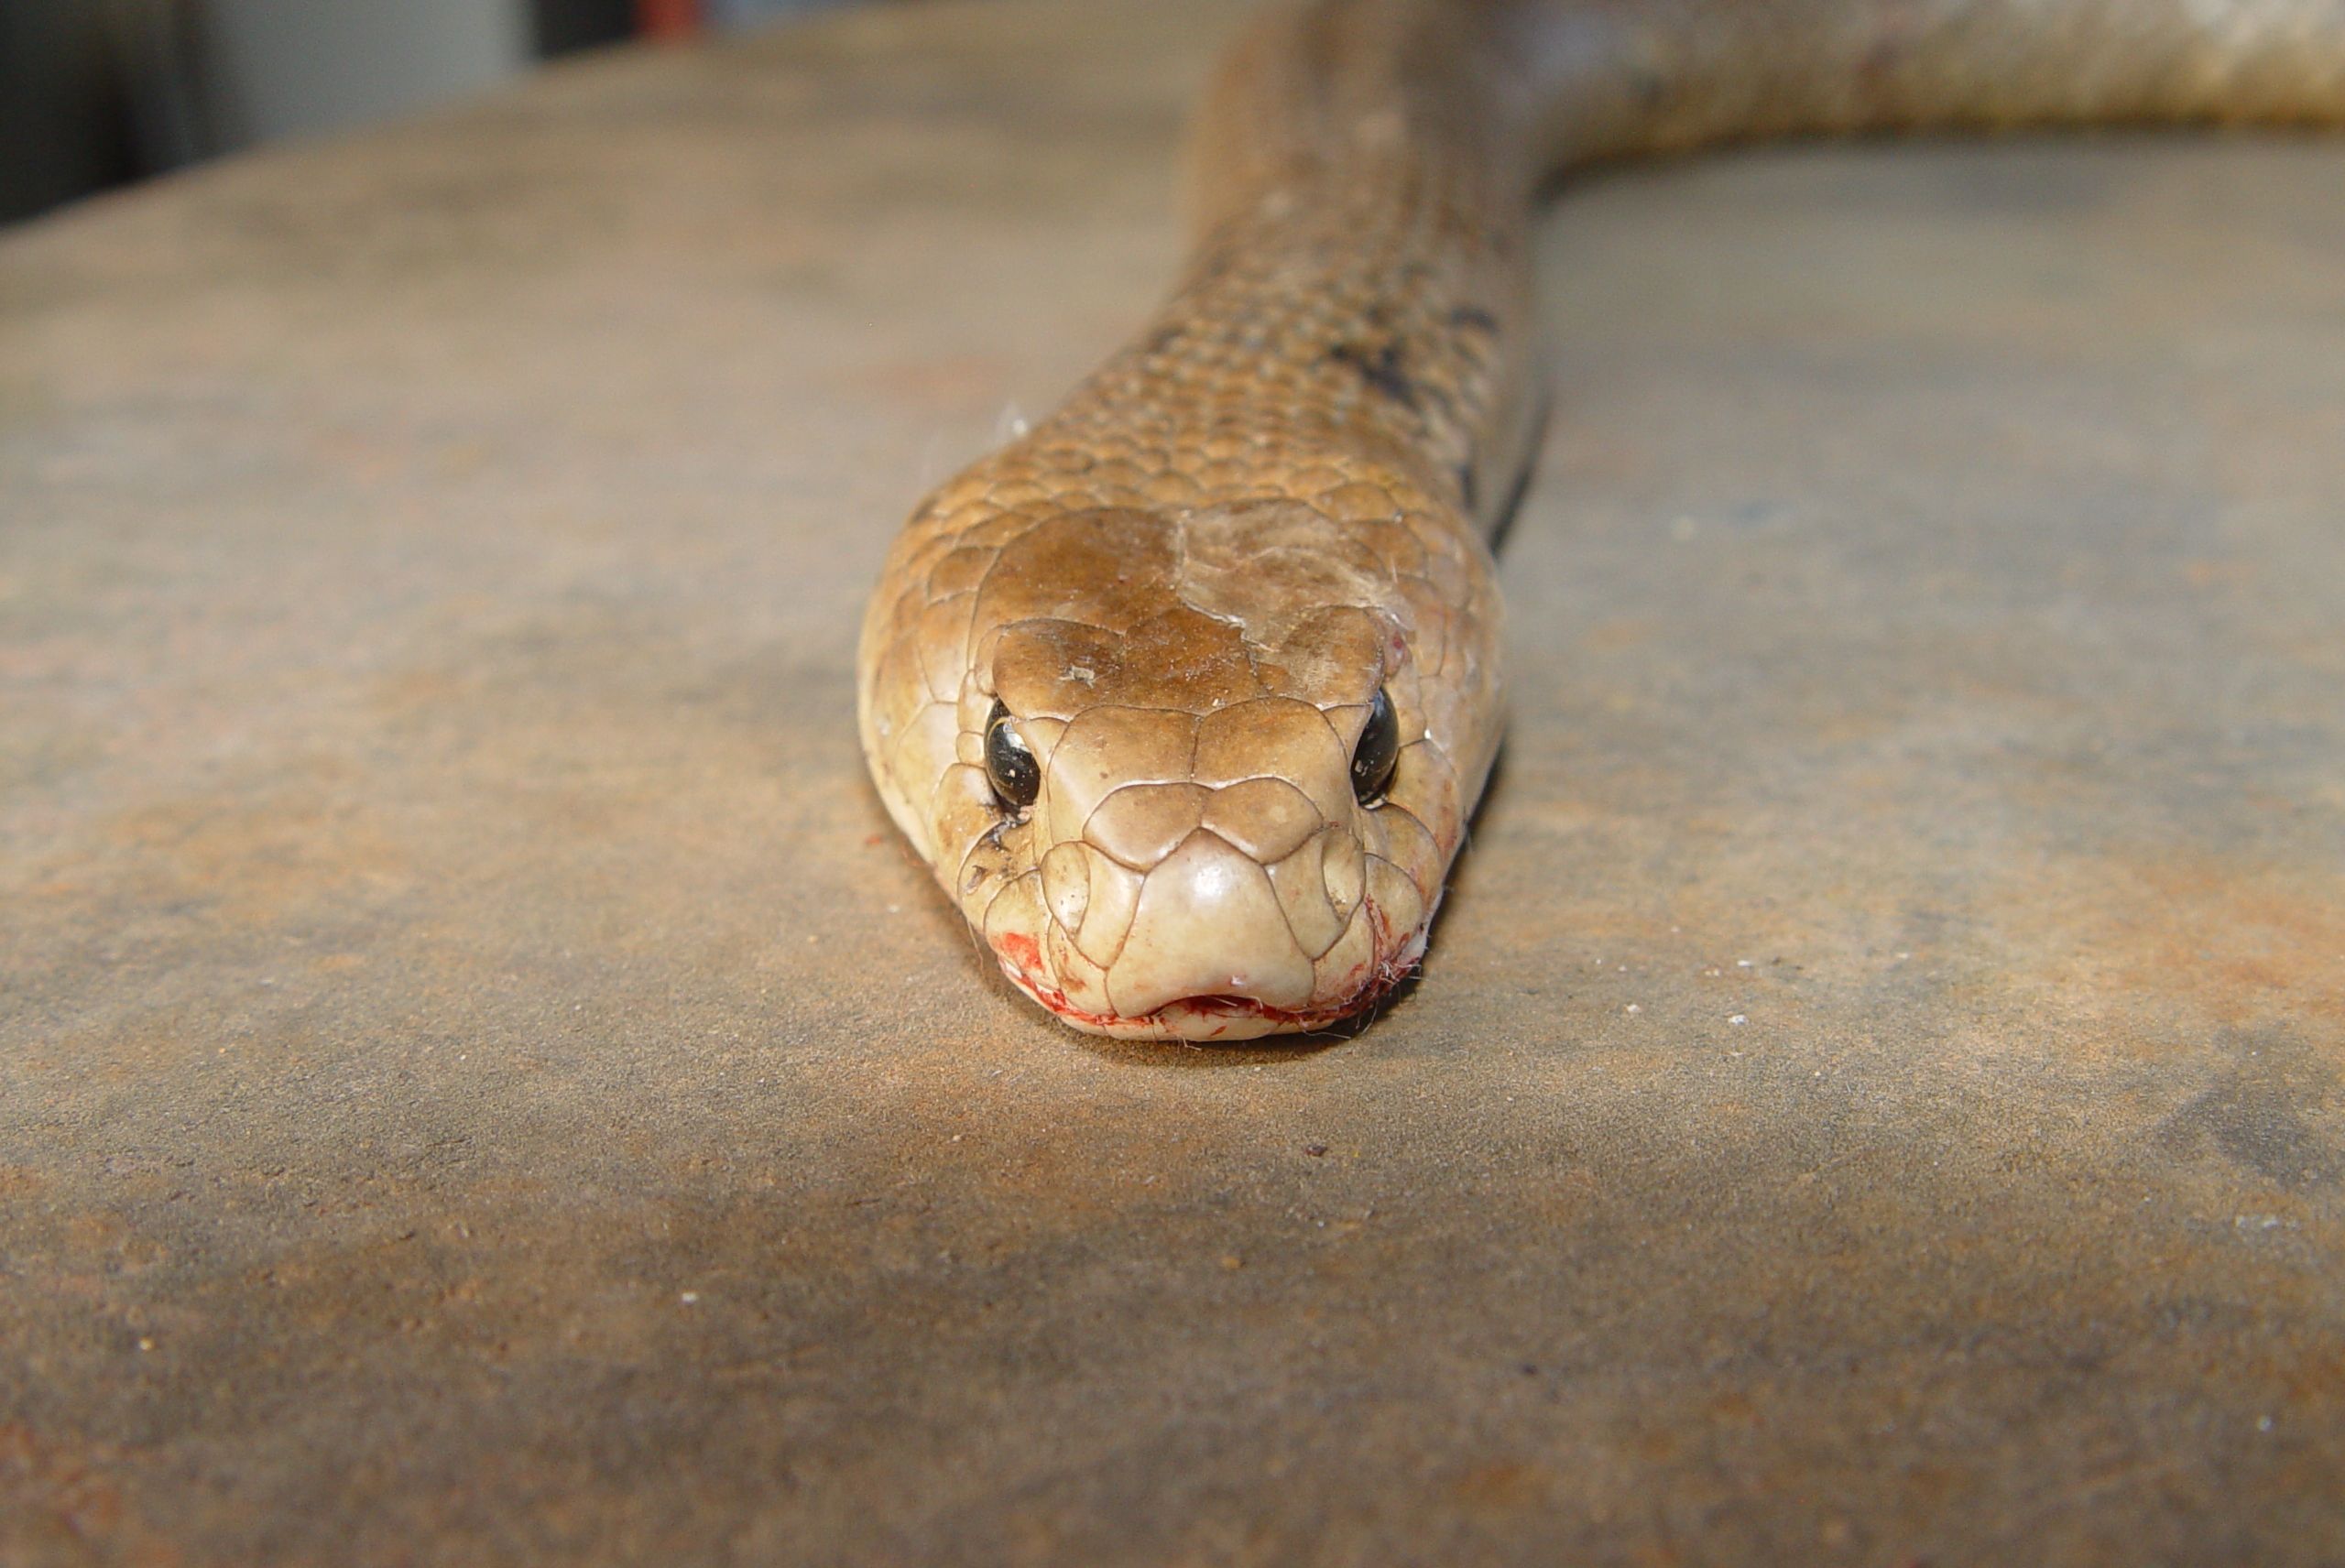 Tổng hợp hình ảnh về loài rắn đẹp nhất - [Kích thước hình ảnh: 2560x1712 px]